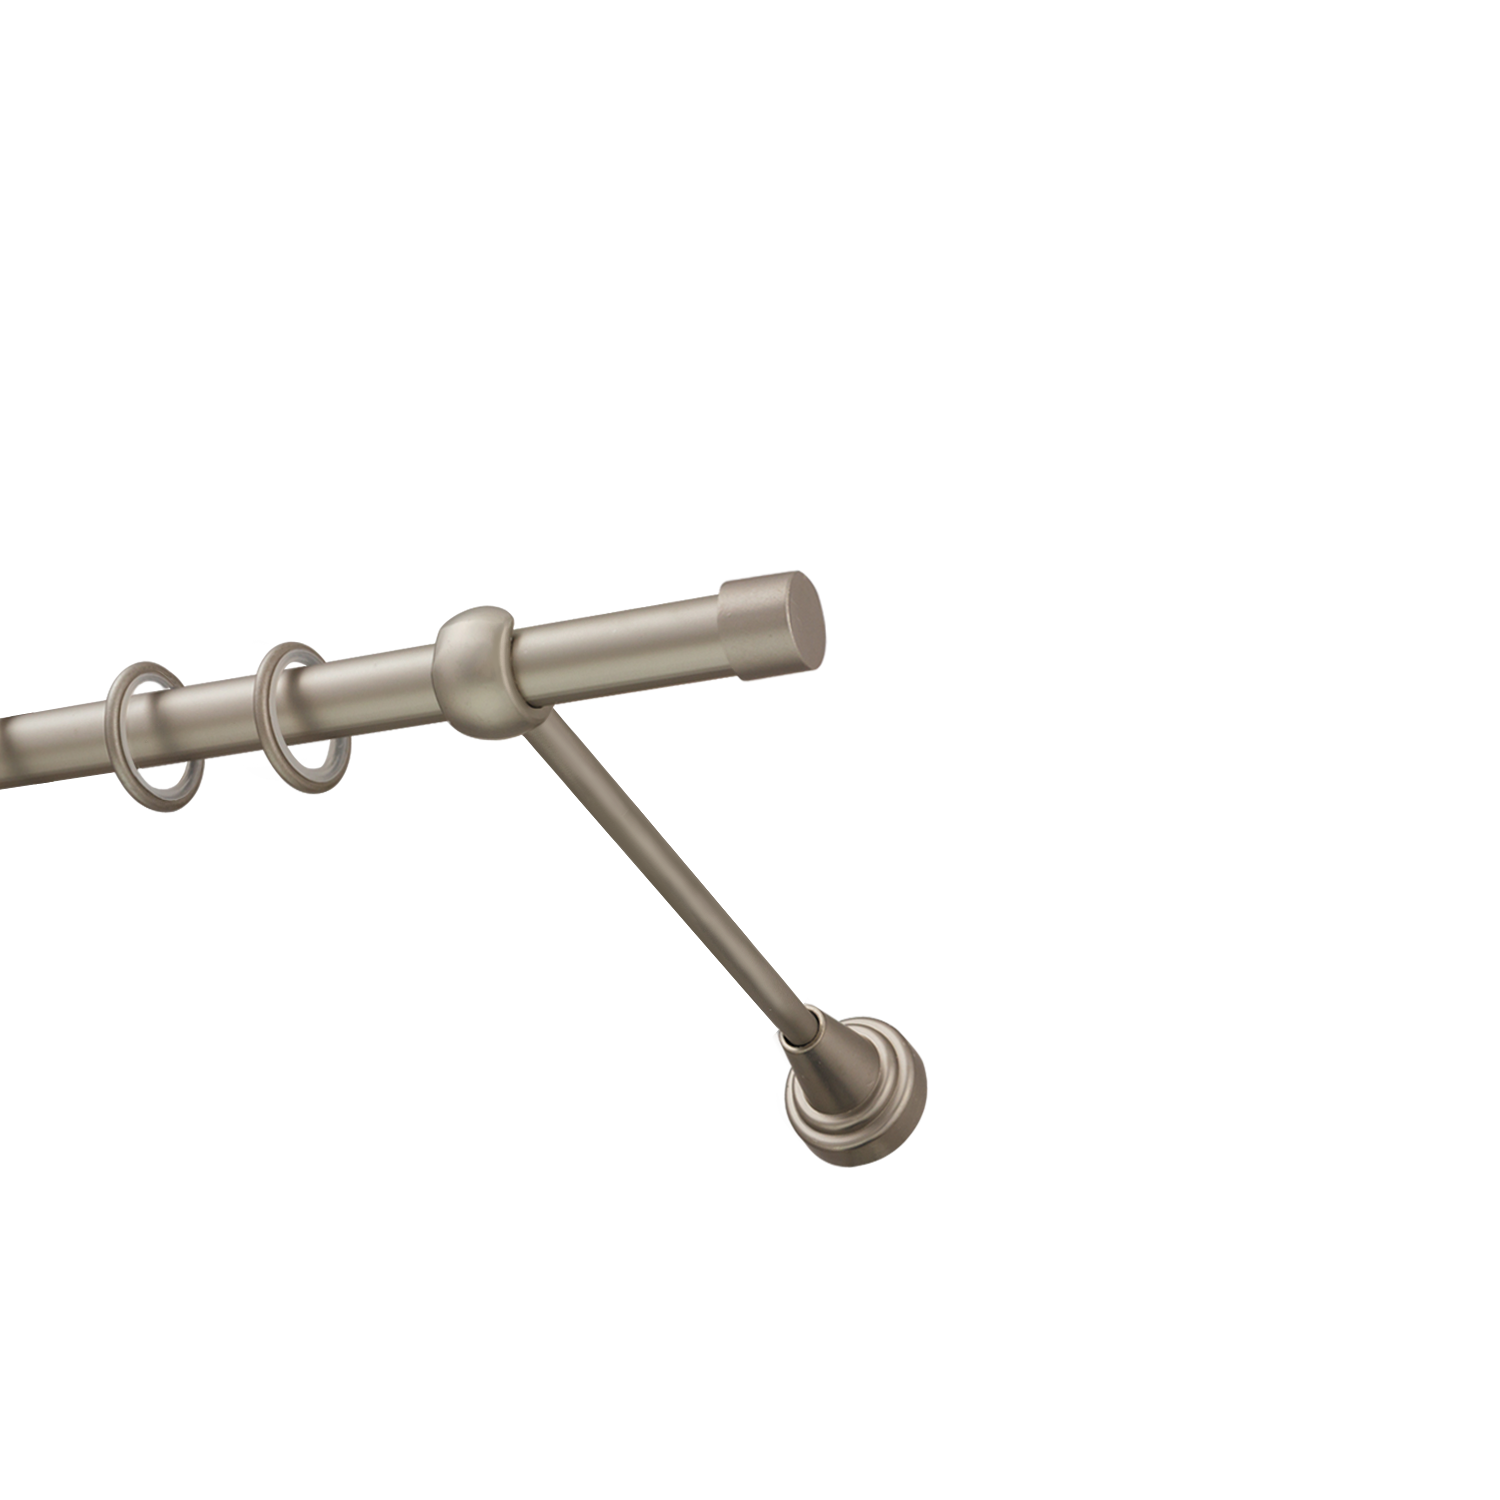 Металлический карниз для штор Заглушка, однорядный 16 мм, сталь, гладкая штанга, длина 200 см - фото Wikidecor.ru